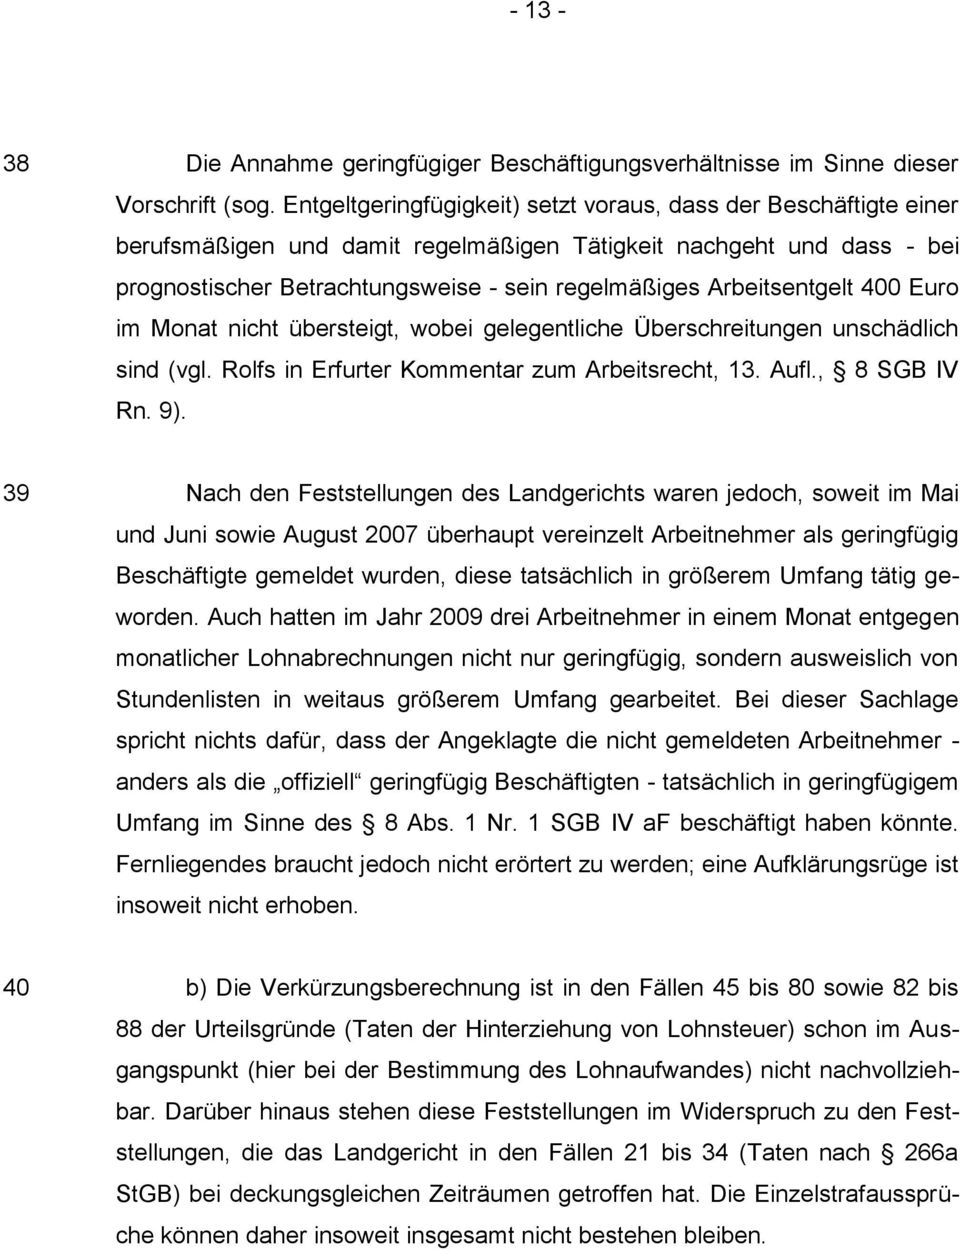 Arbeitsentgelt 400 Euro im Monat nicht übersteigt, wobei gelegentliche Überschreitungen unschädlich sind (vgl. Rolfs in Erfurter Kommentar zum Arbeitsrecht, 13. Aufl., 8 SGB IV Rn. 9).